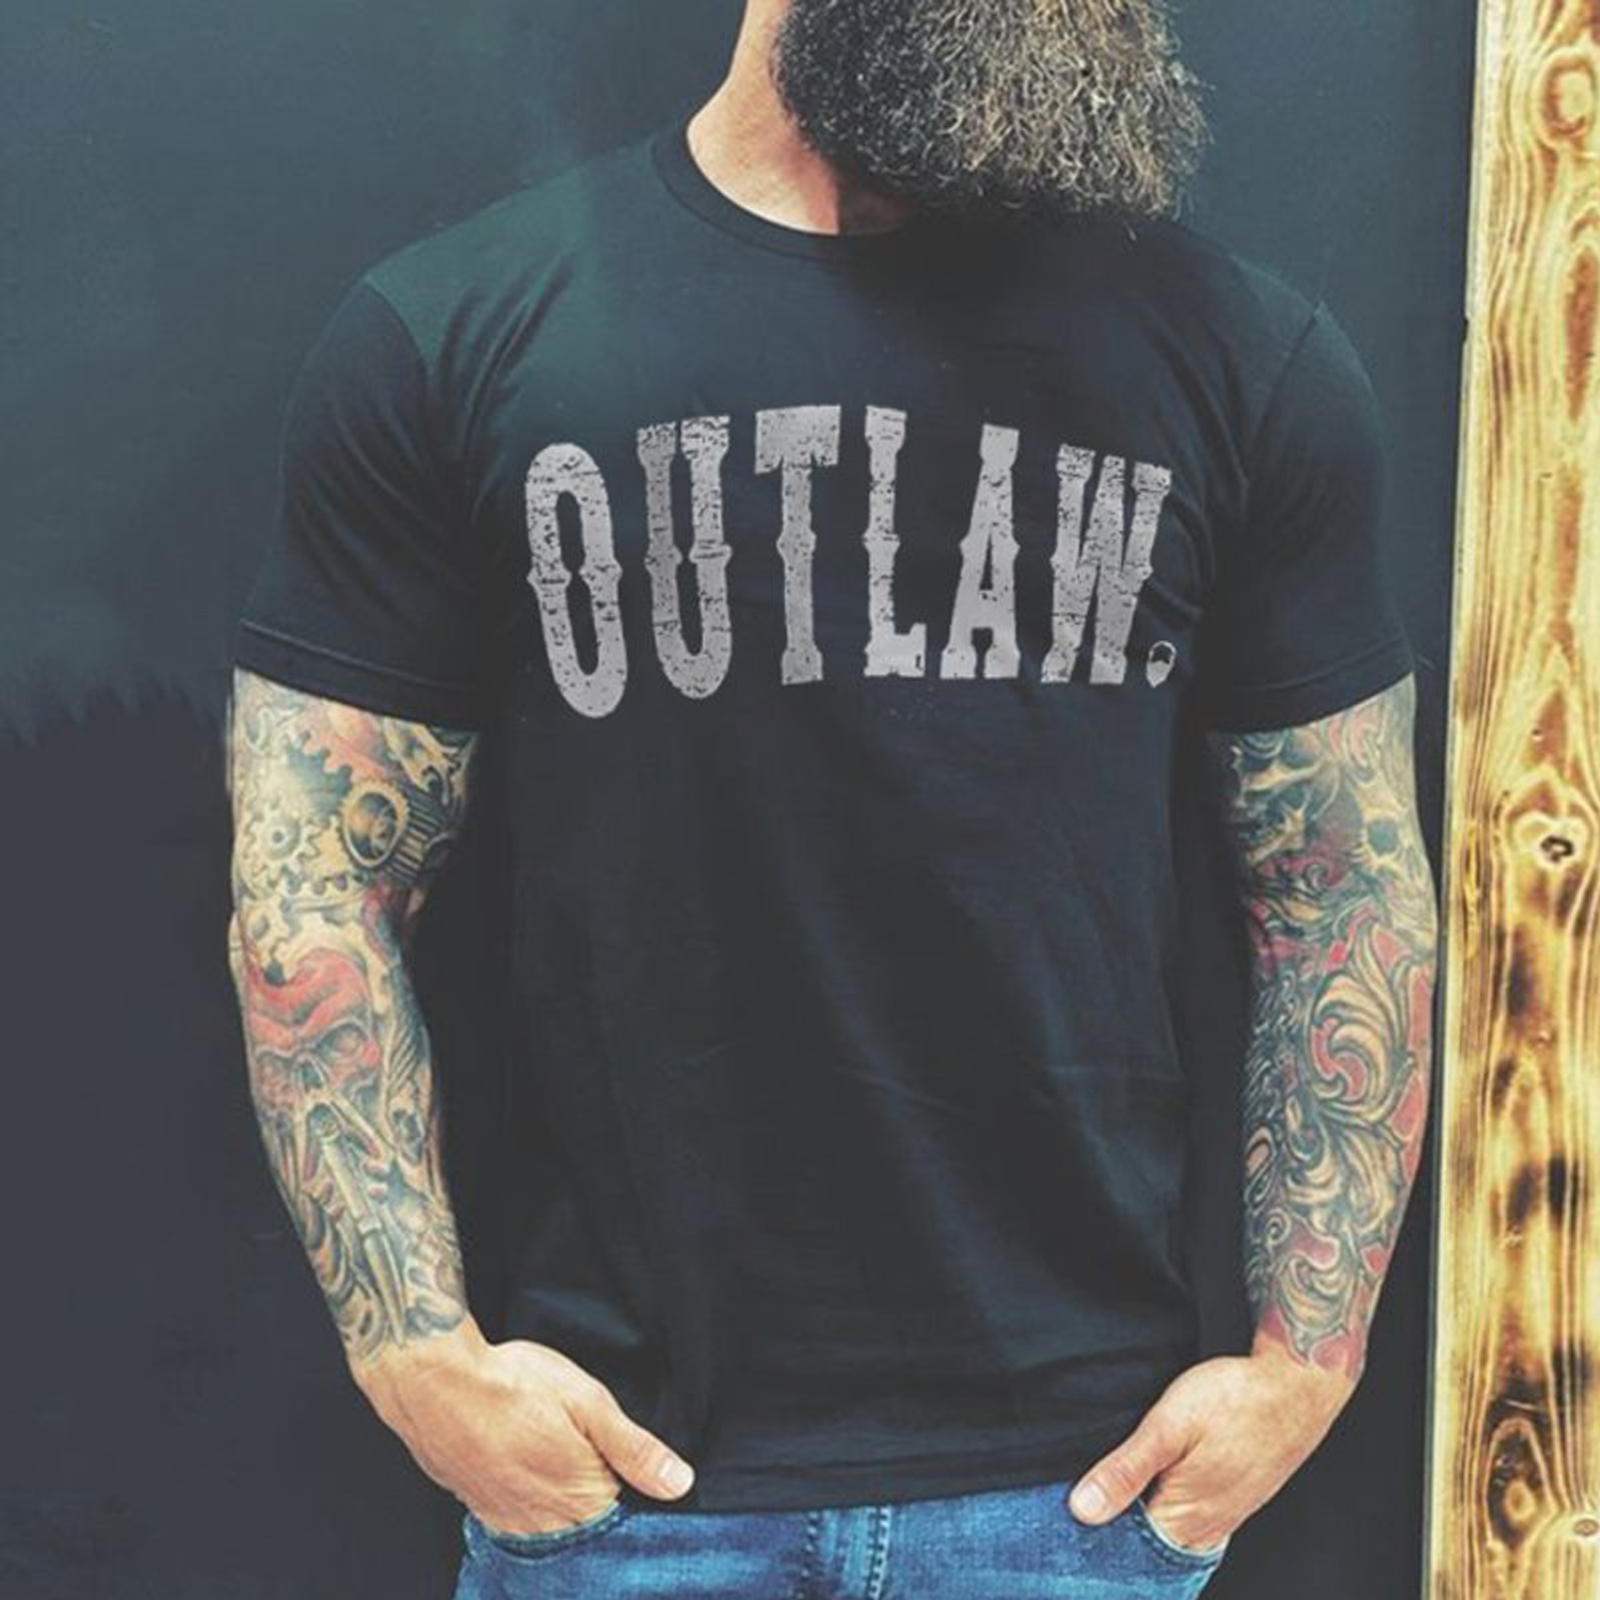 Livereid Black Men Outlaw Letter Printed Designer Black T-Shirt - Livereid